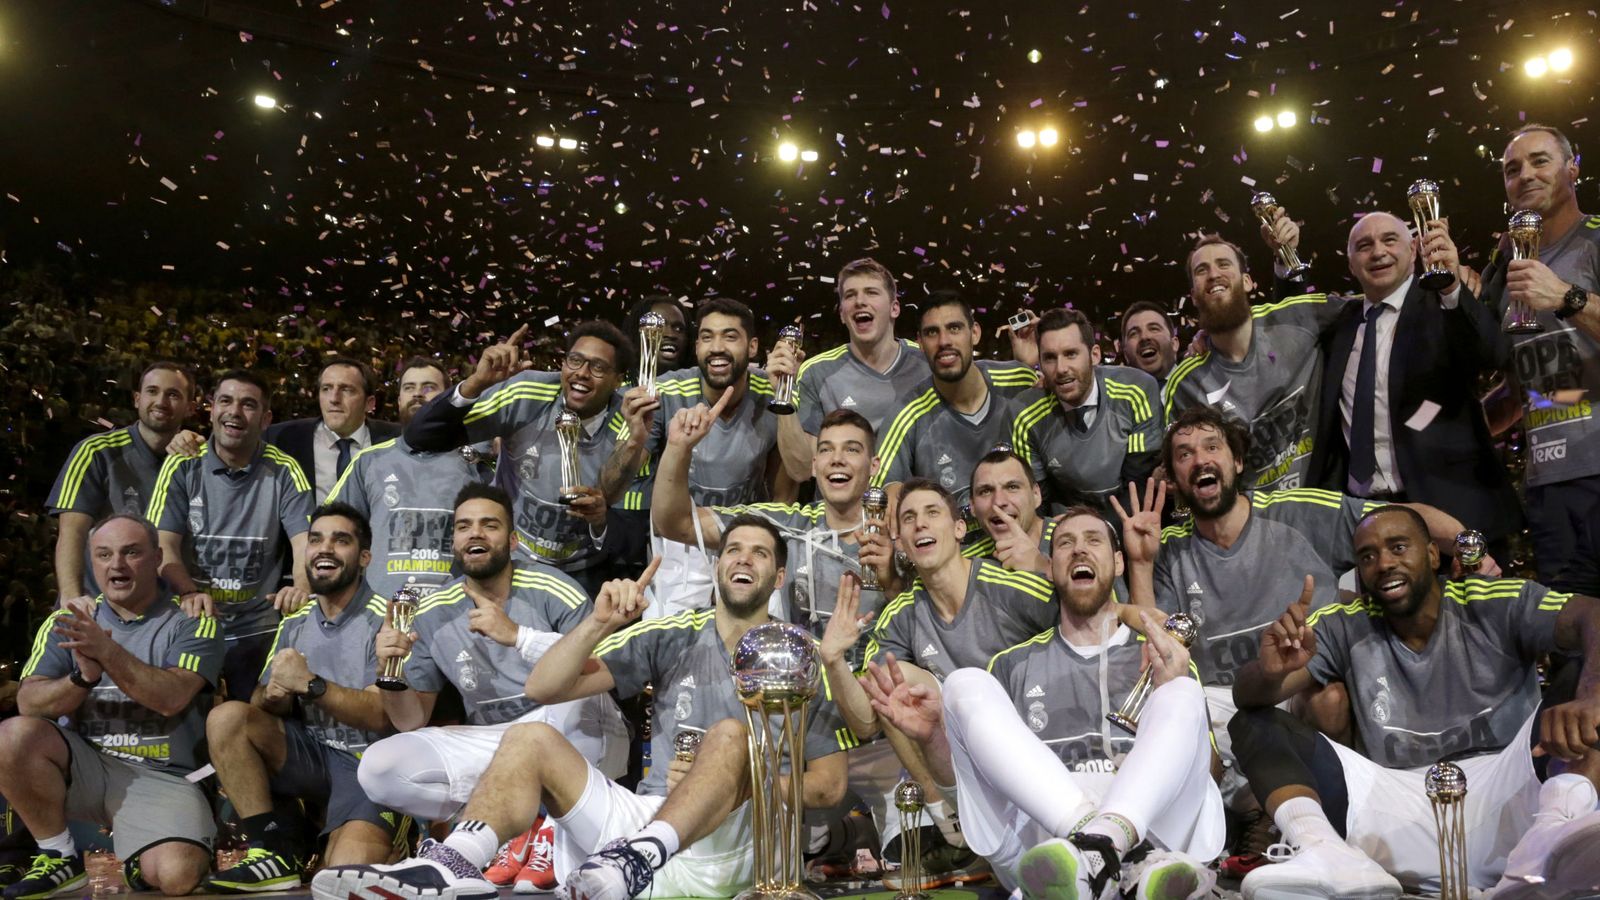 Foto: El Real Madrid ganó en 2016 su tercer título seguido. ¿Ganará en 2016 el tercero? (Lavandeira Jr/EFE)